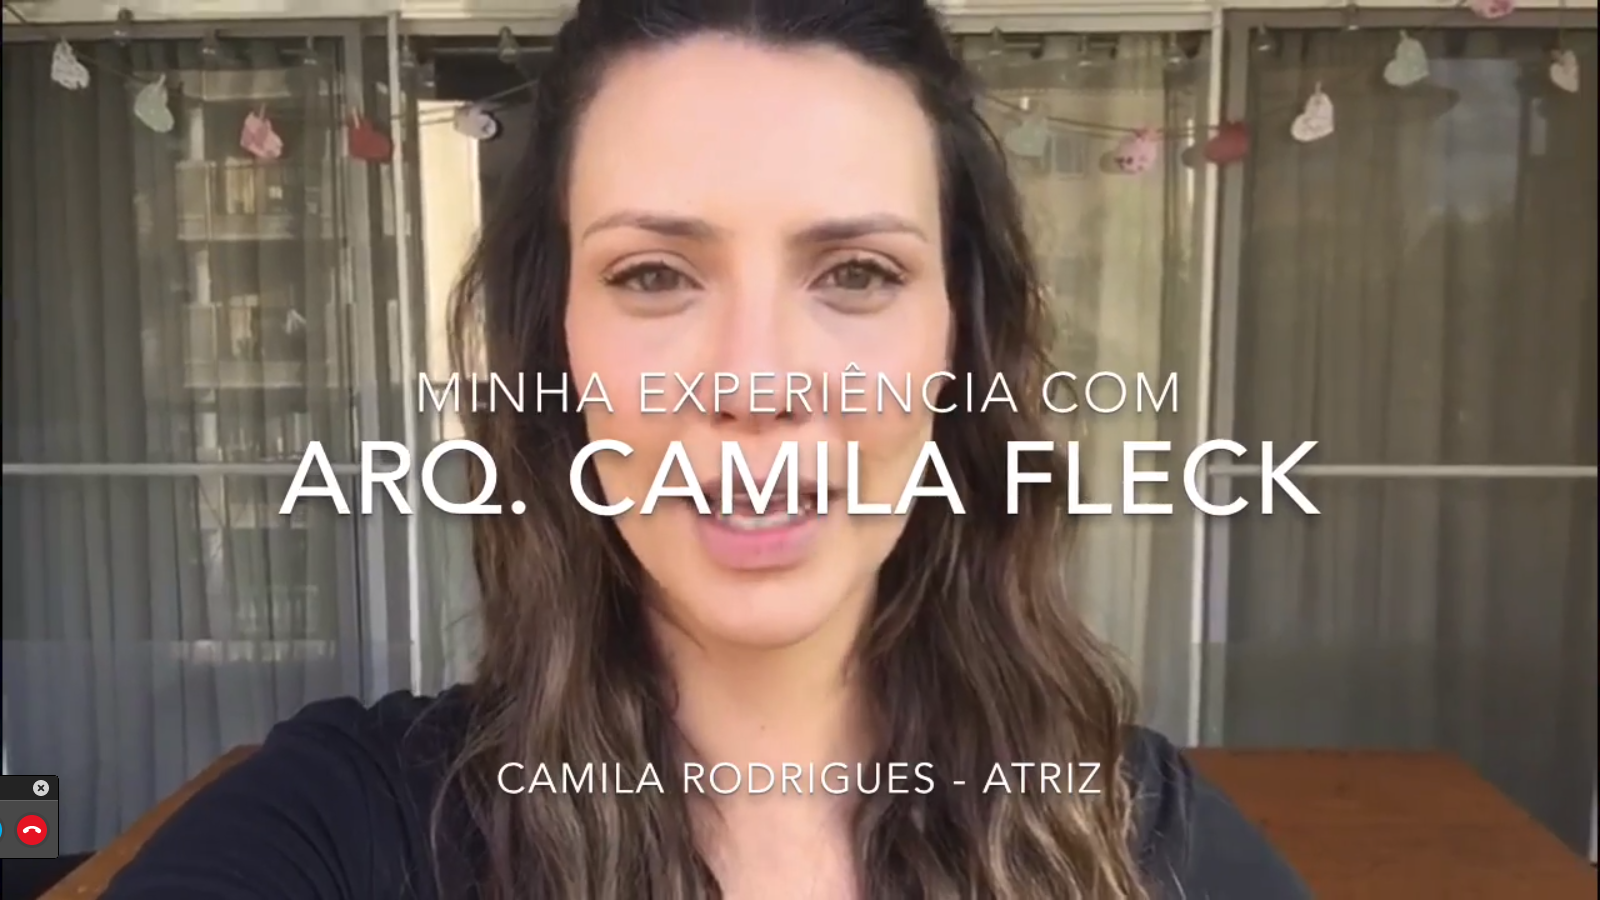 Escritorio de Arquitetura Camila Fleck Depoimento Camila Rodrigues